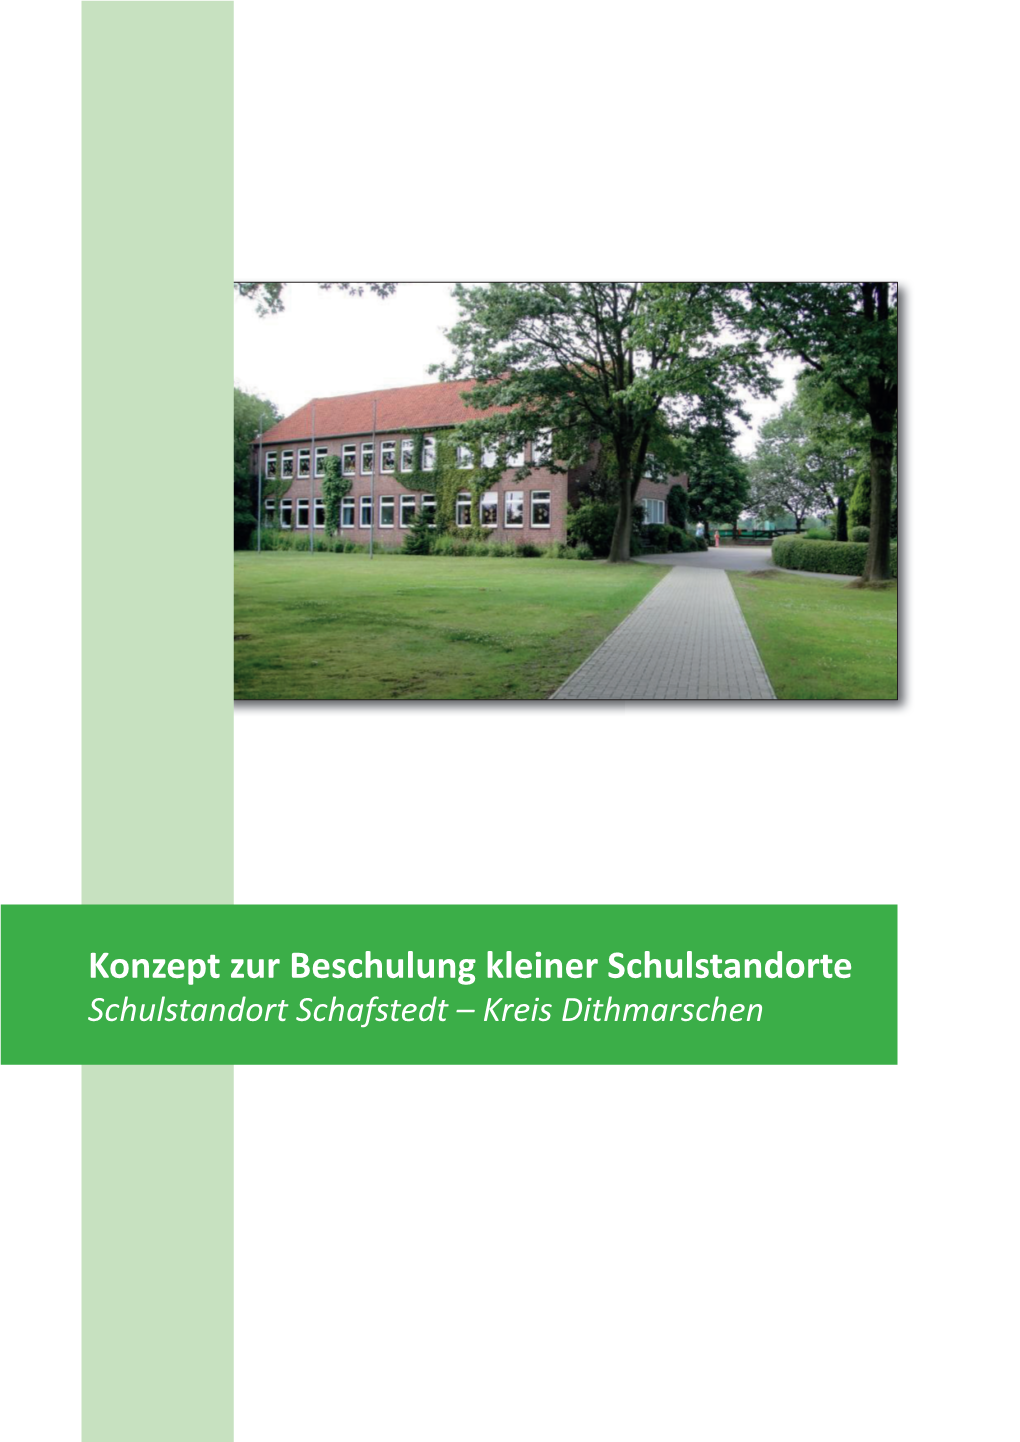 Grundschule Schafstedt Konzept 2014.Indd